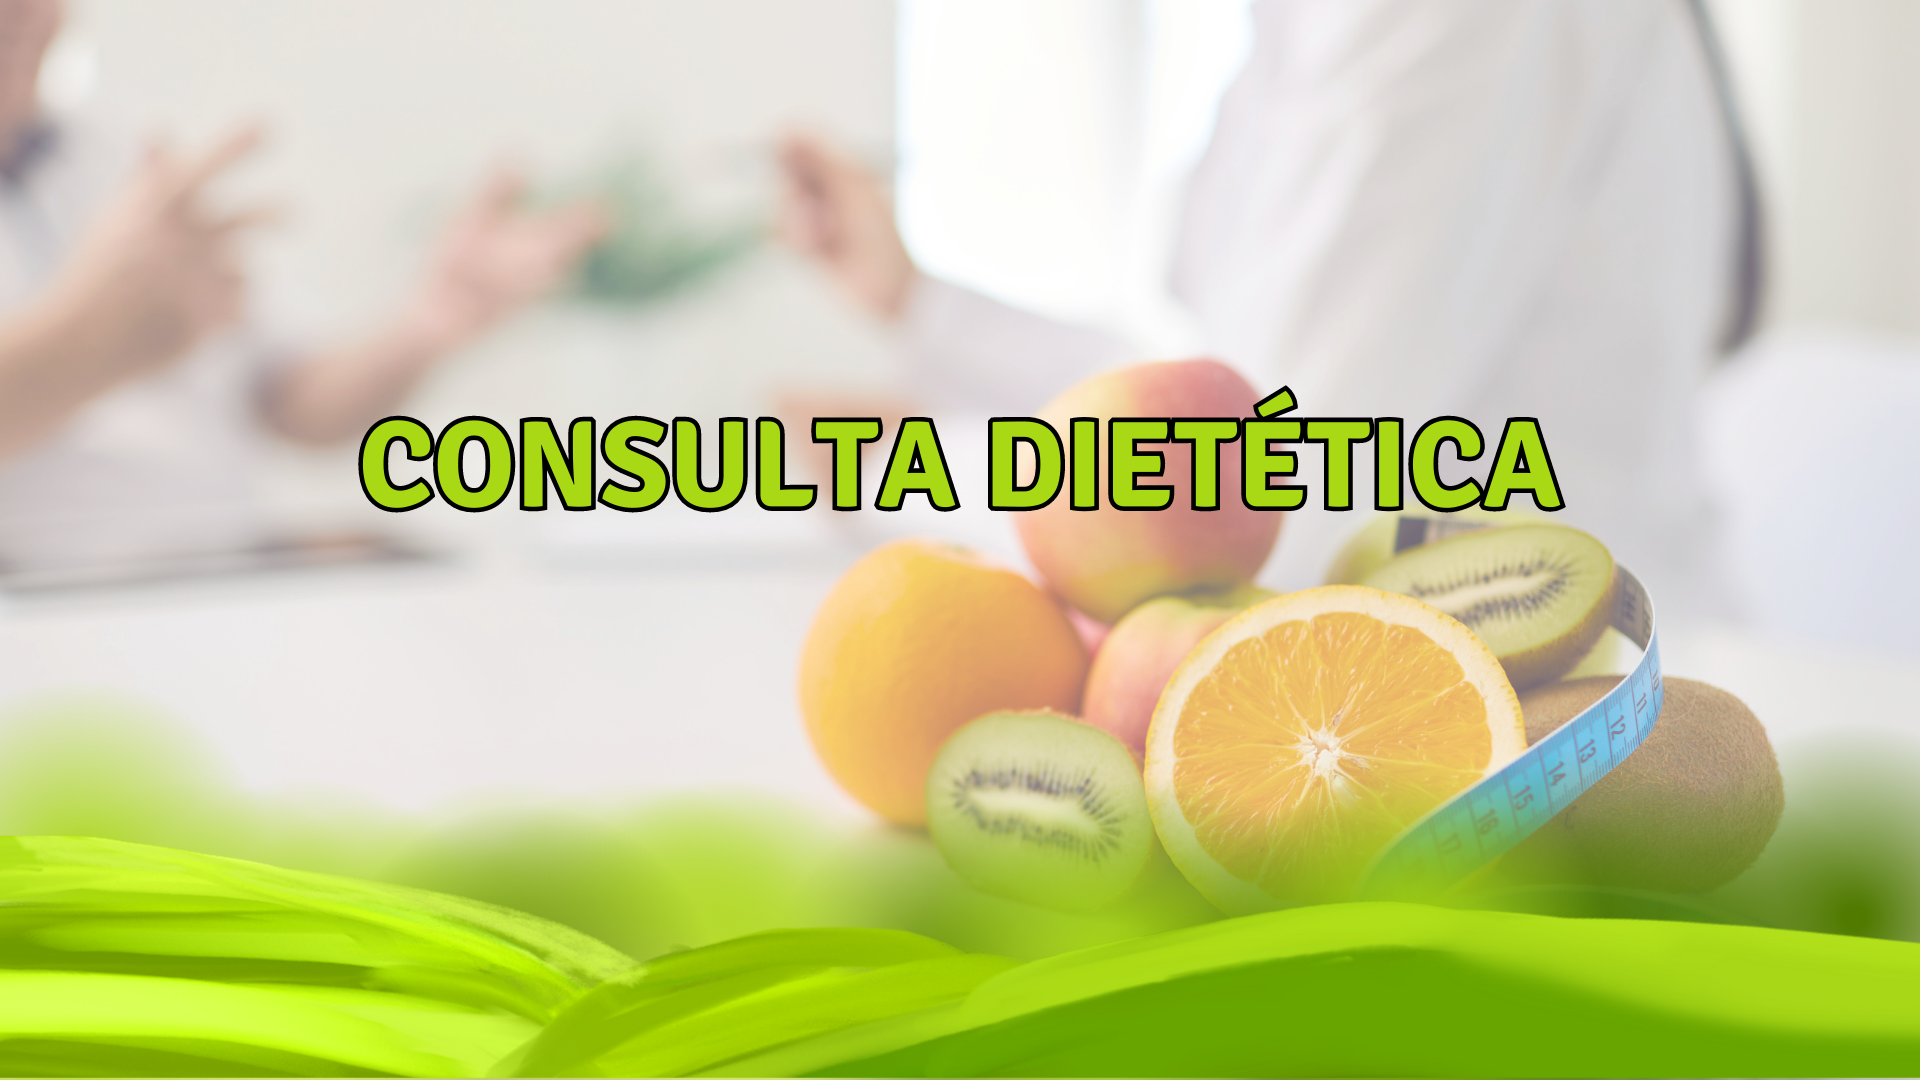 Consulta dietética.png